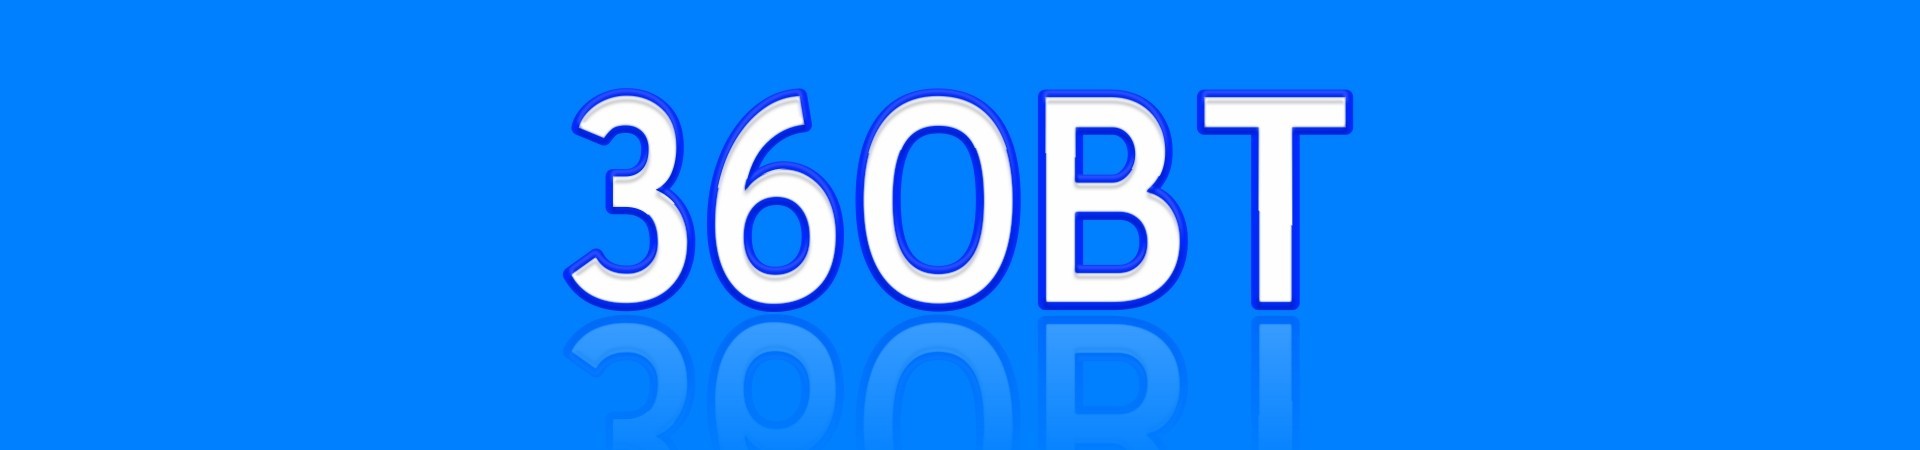 360BT